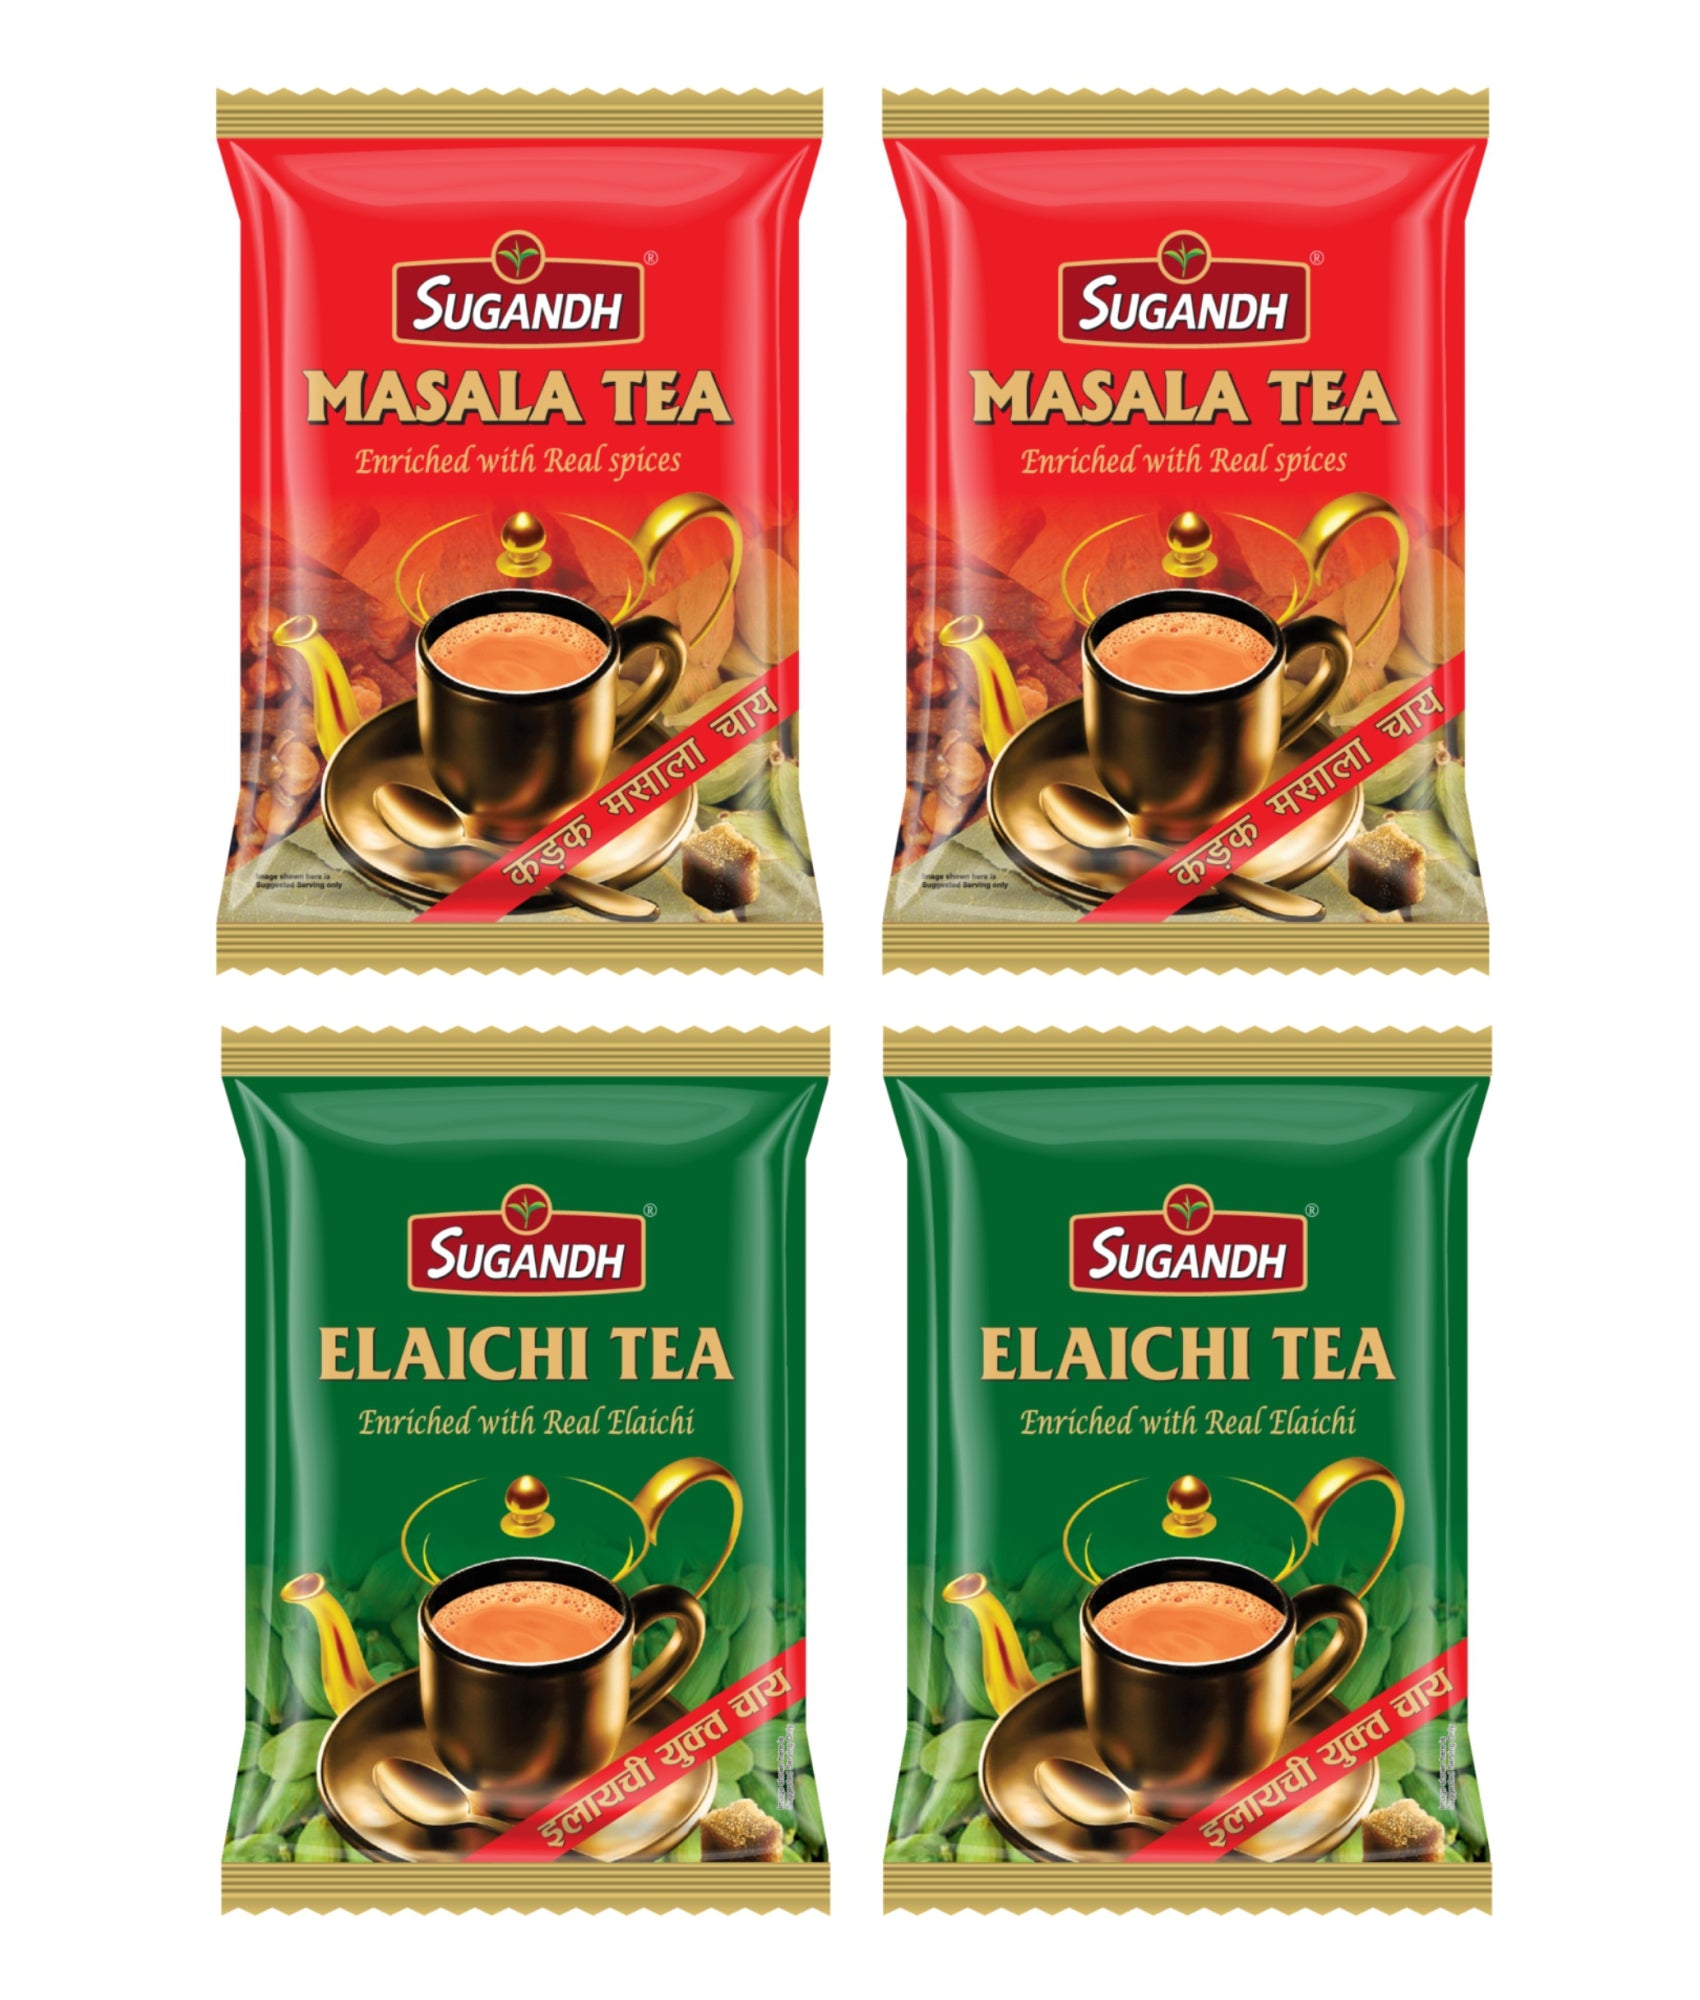 Sugandh Elaichi Tea and Masala Tea Combo Pack 800g (4 Packs x 200g Each - 2 Packs of Each flavour)